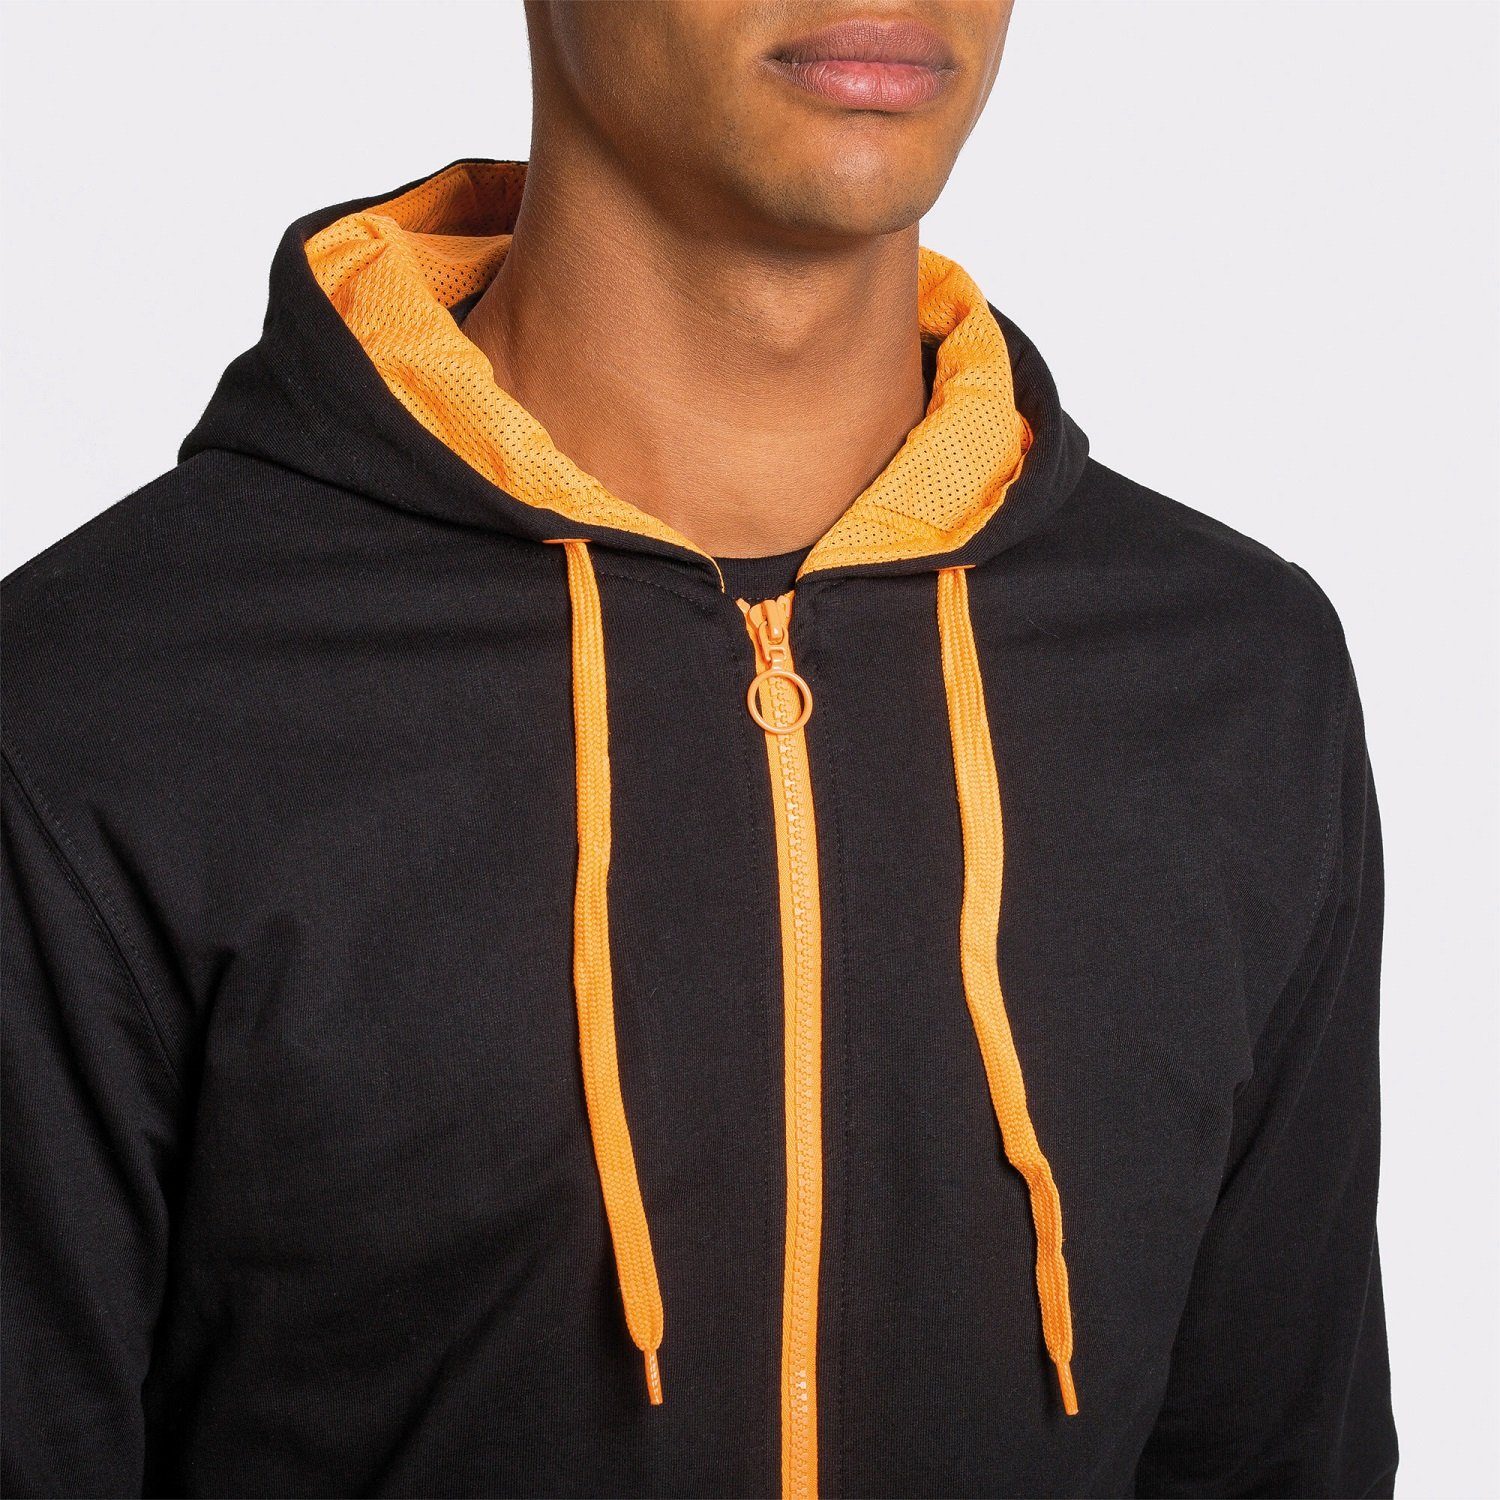 mit für Sweat-Jacke Herren Roly geeignet Grau/ Kapuzensweatjacke Kapuze Kapuzensweater Frauen mit Reißverschluss auch / Orange